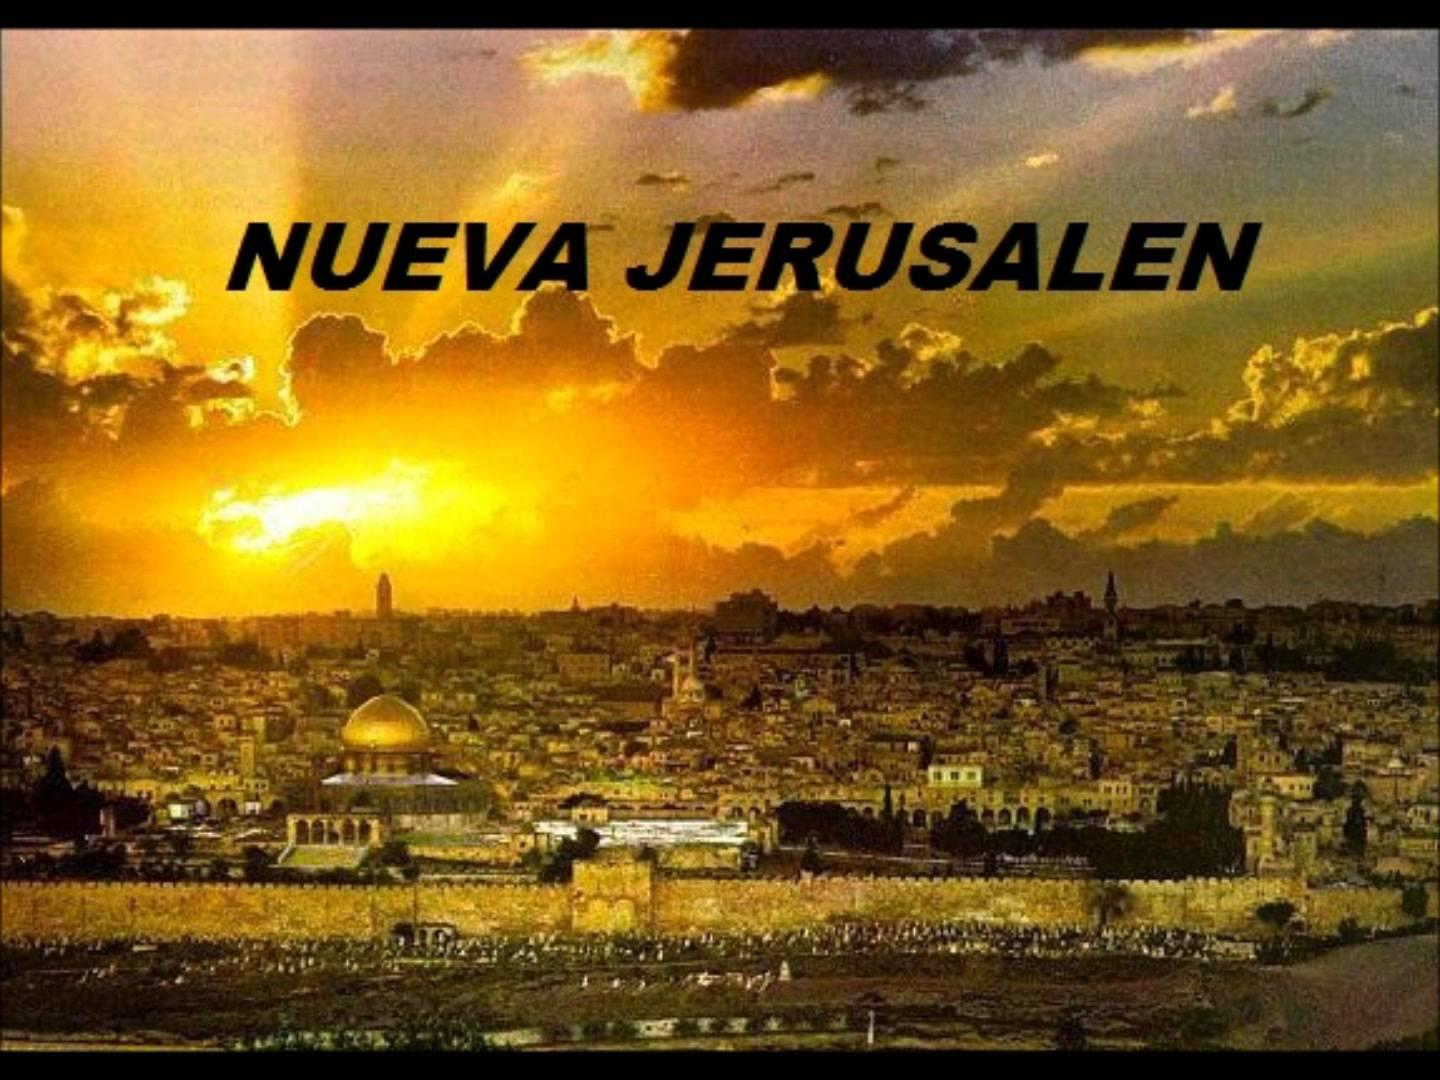 I. INTRODUCCIÓN En la ciudad de Jerusalén se dan cita judíos, cristianos y musulmanes; dado que estas tres grandes religiones